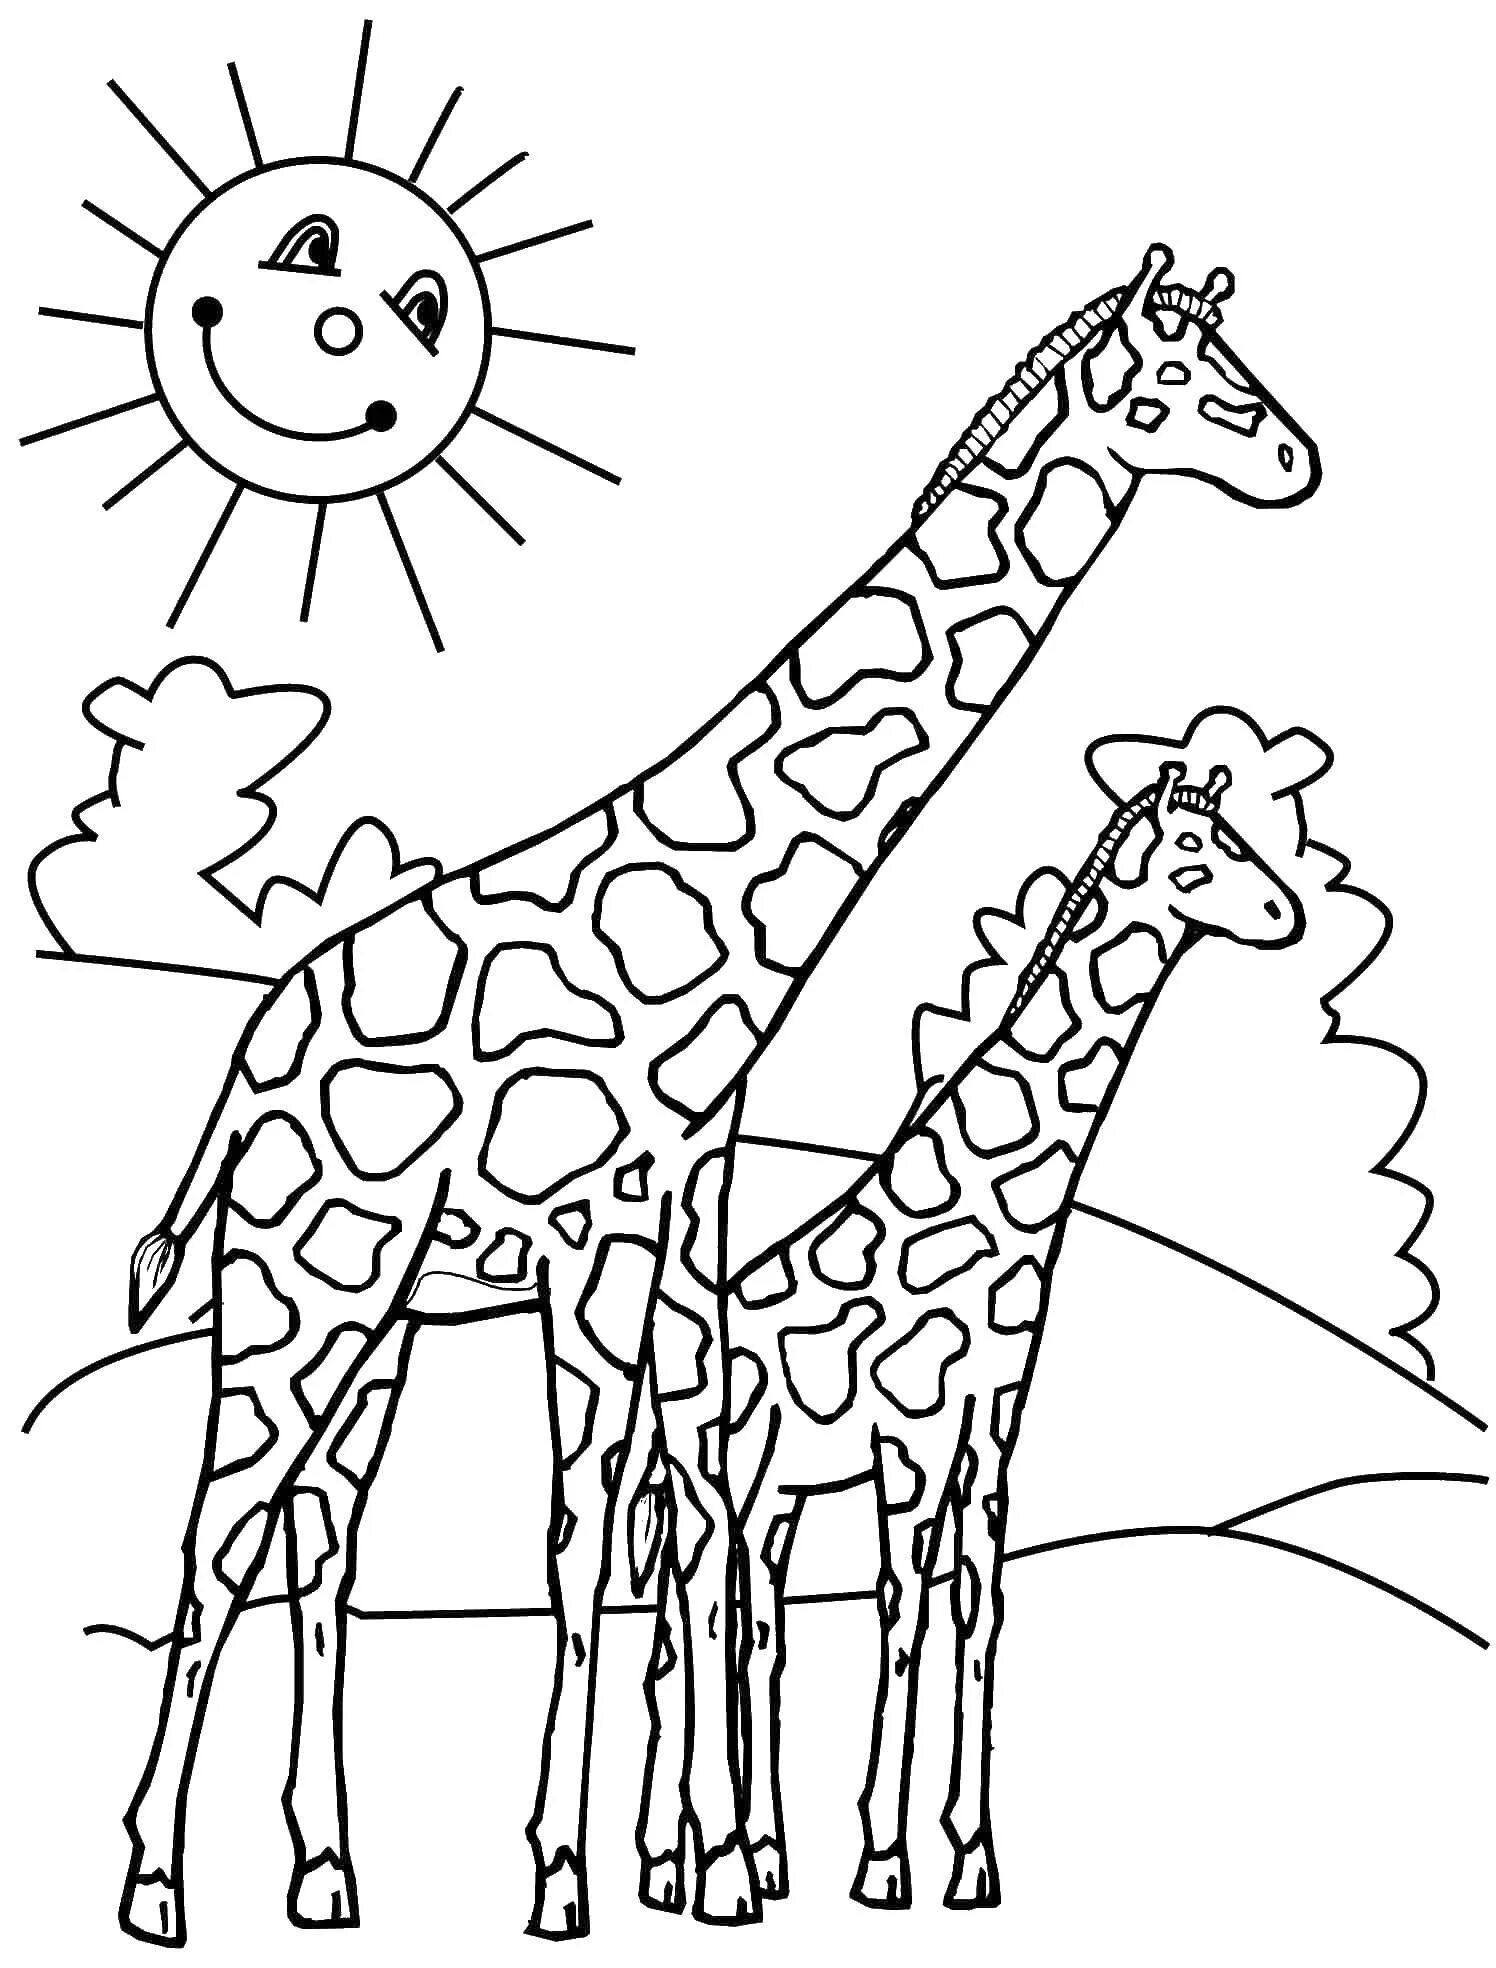 Чудесная раскраска жирафа для самых маленьких